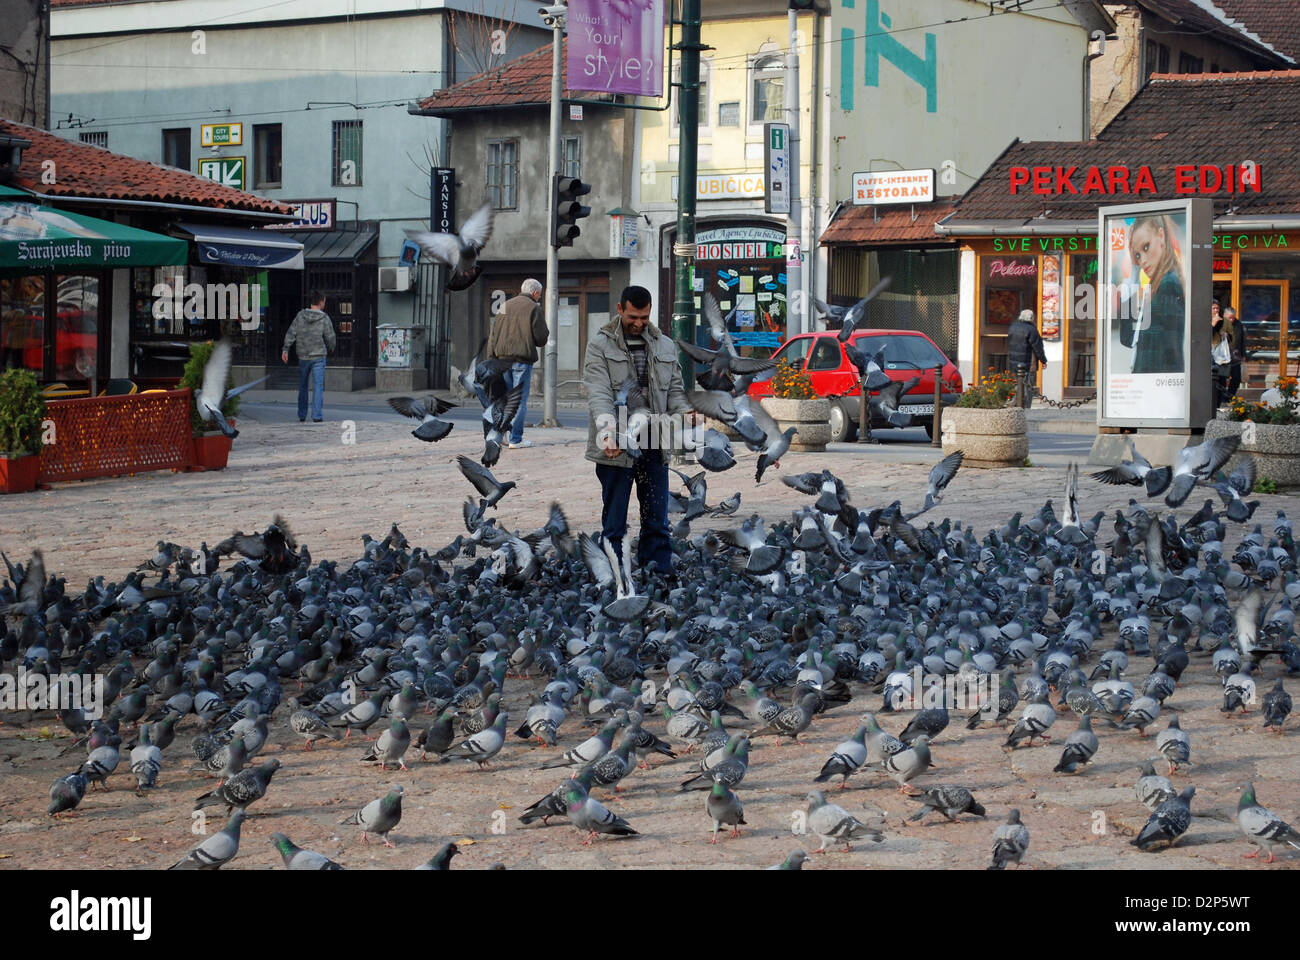 Man with pigeons in Baščaršija, Old town in Sarajevo Stock Photo